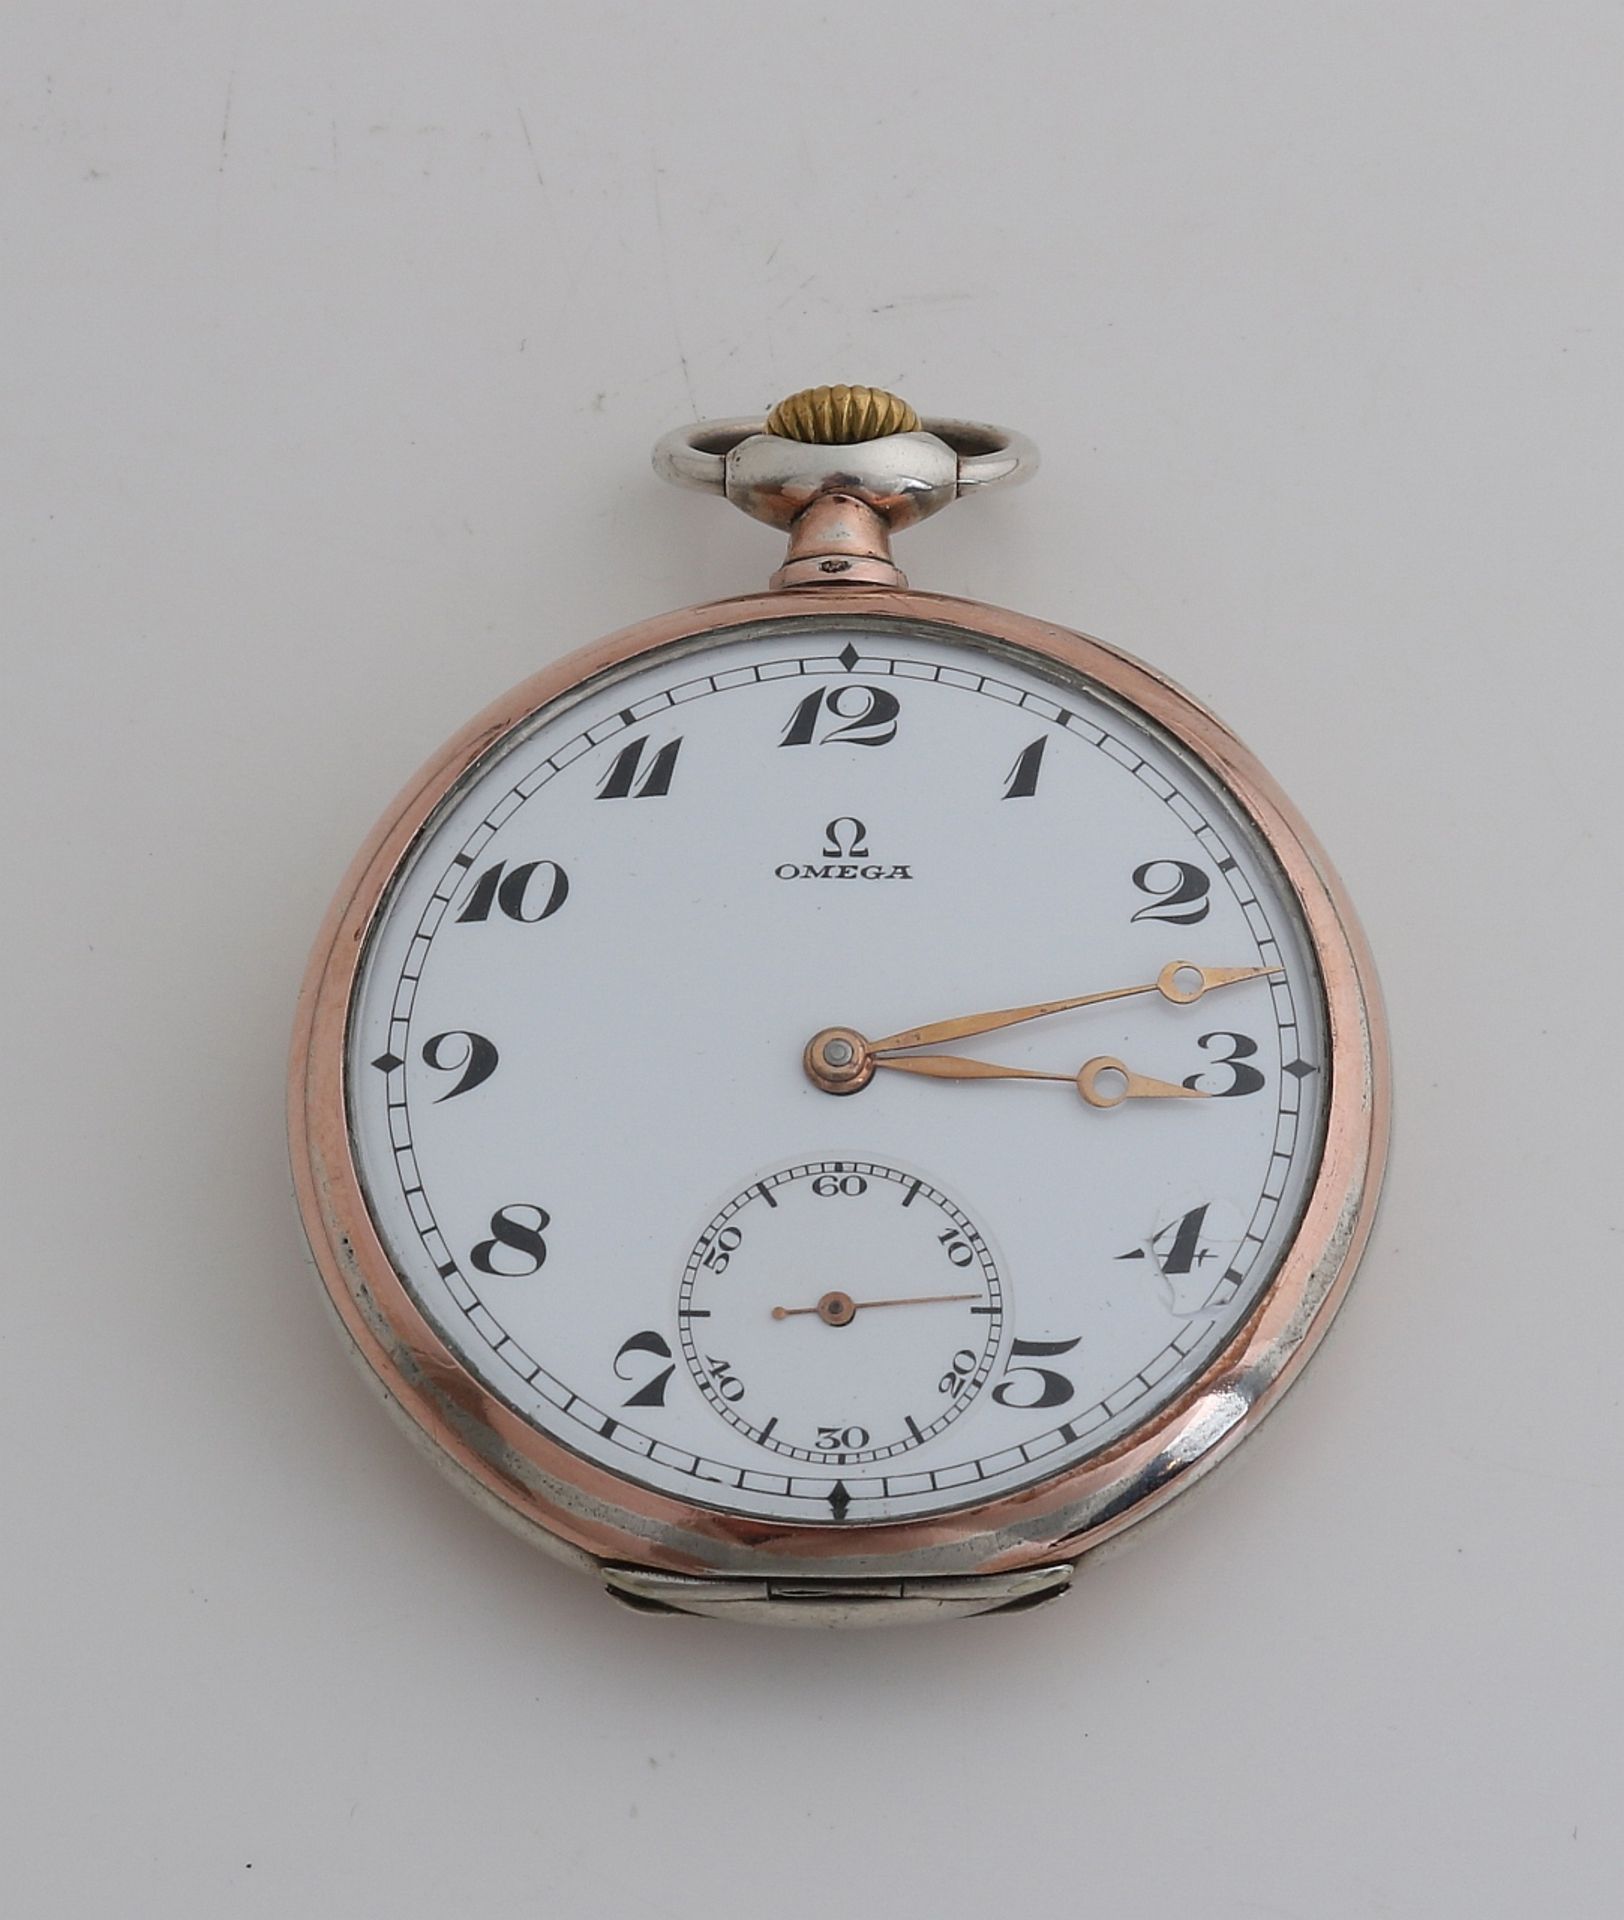 Silberne Omega-Taschenuhr, 800/000, mit rosafarbenem Rand und rosafarbenen Zeigern. Mechanisch. ø49